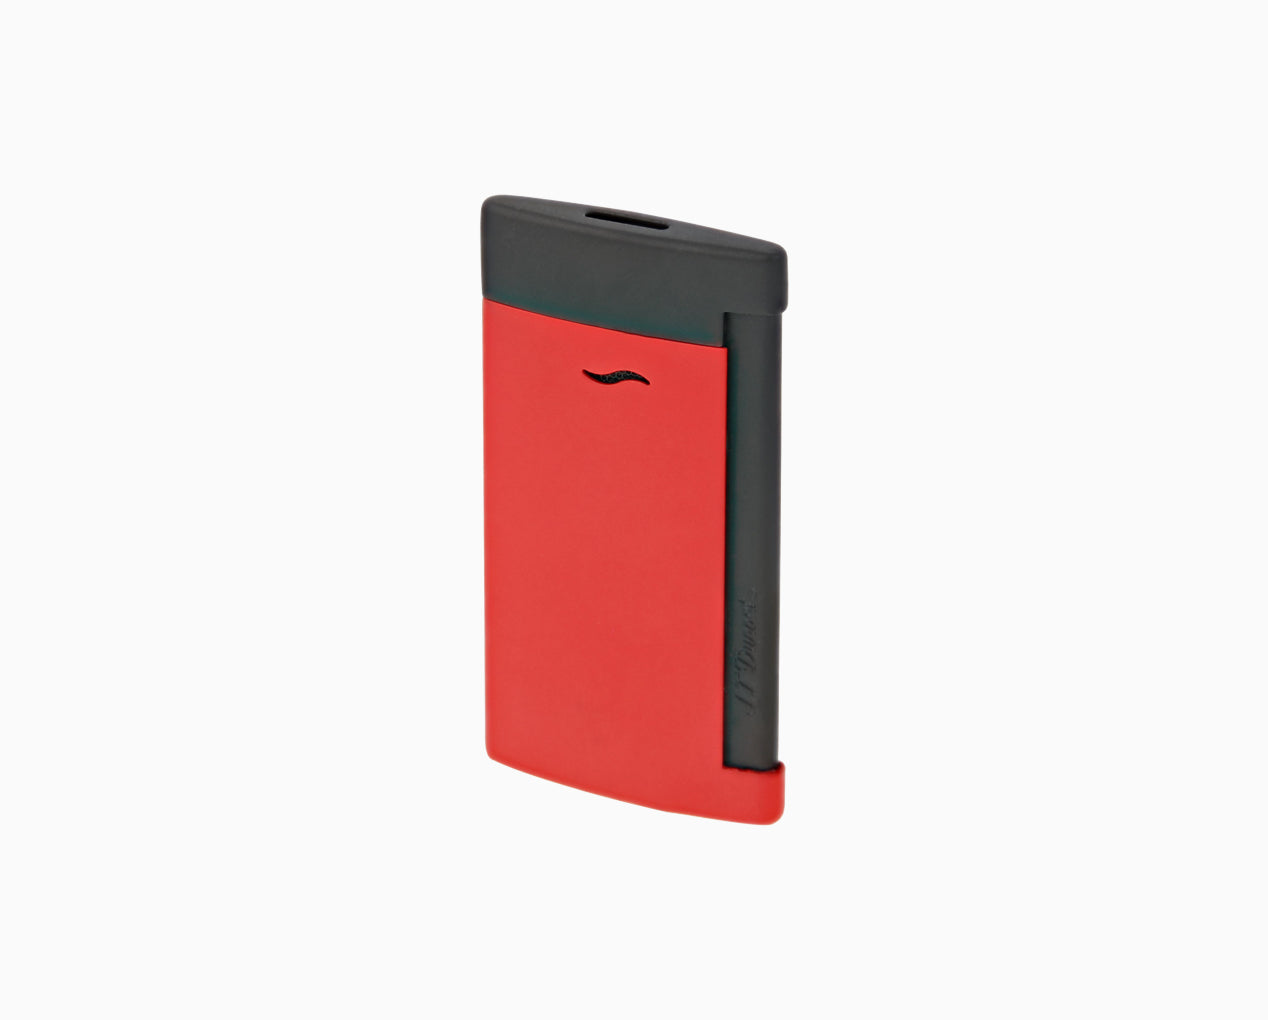 hek aanwijzing Sanders SLIM 7 MATT BLACK AND RED LIGHTER - Luxury lighters | S.T. Dupont